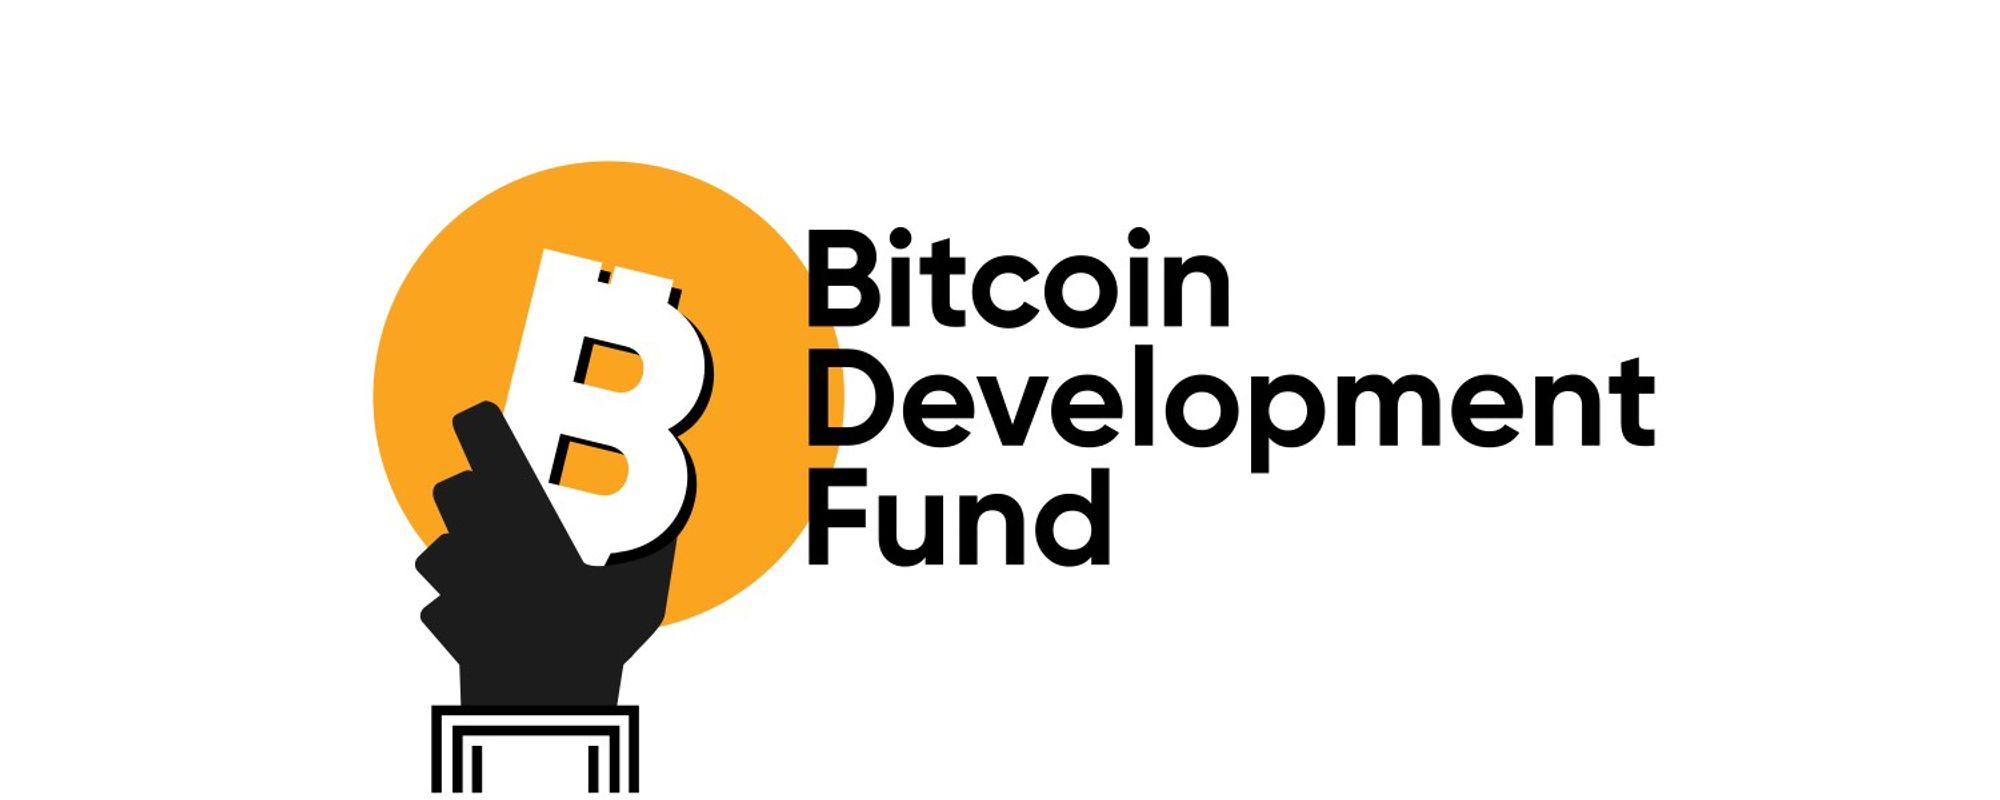 Bitcoin Development Fund